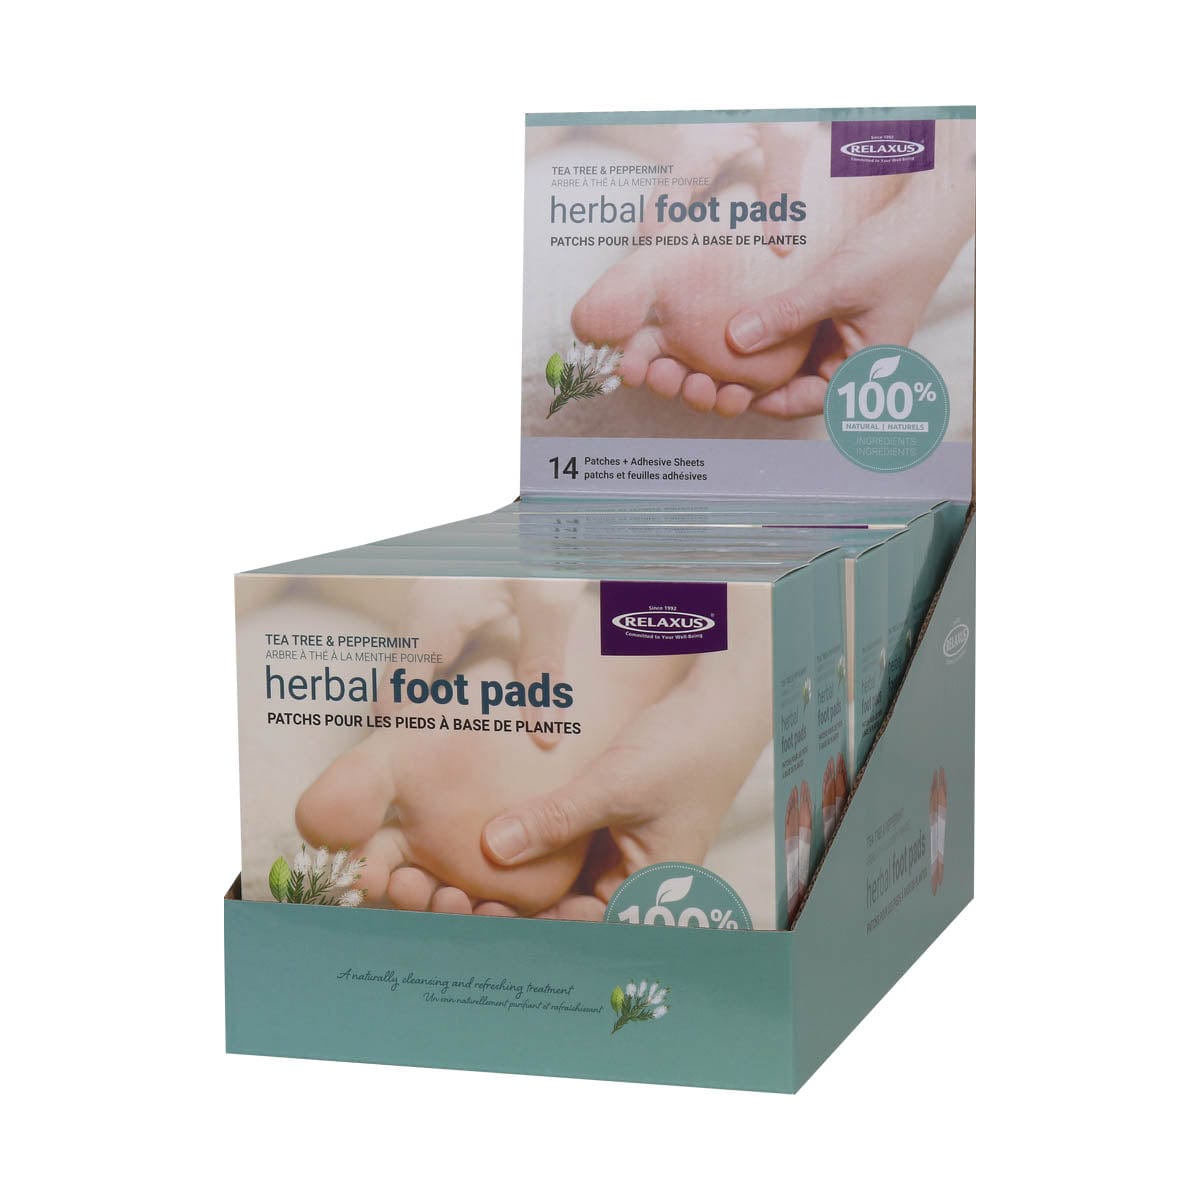 Tea Tree & Peppermint Herbal Detox Foot Pads displayer